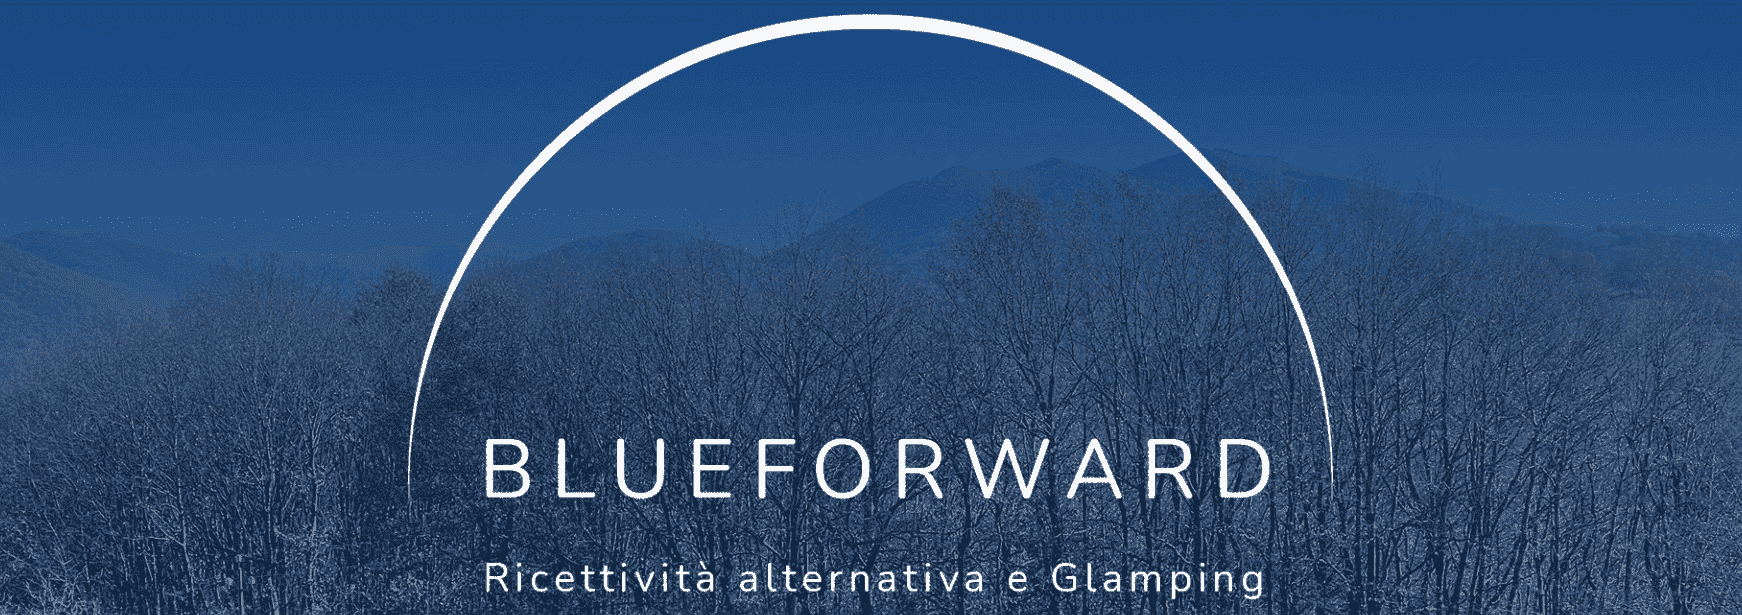 Blueforward